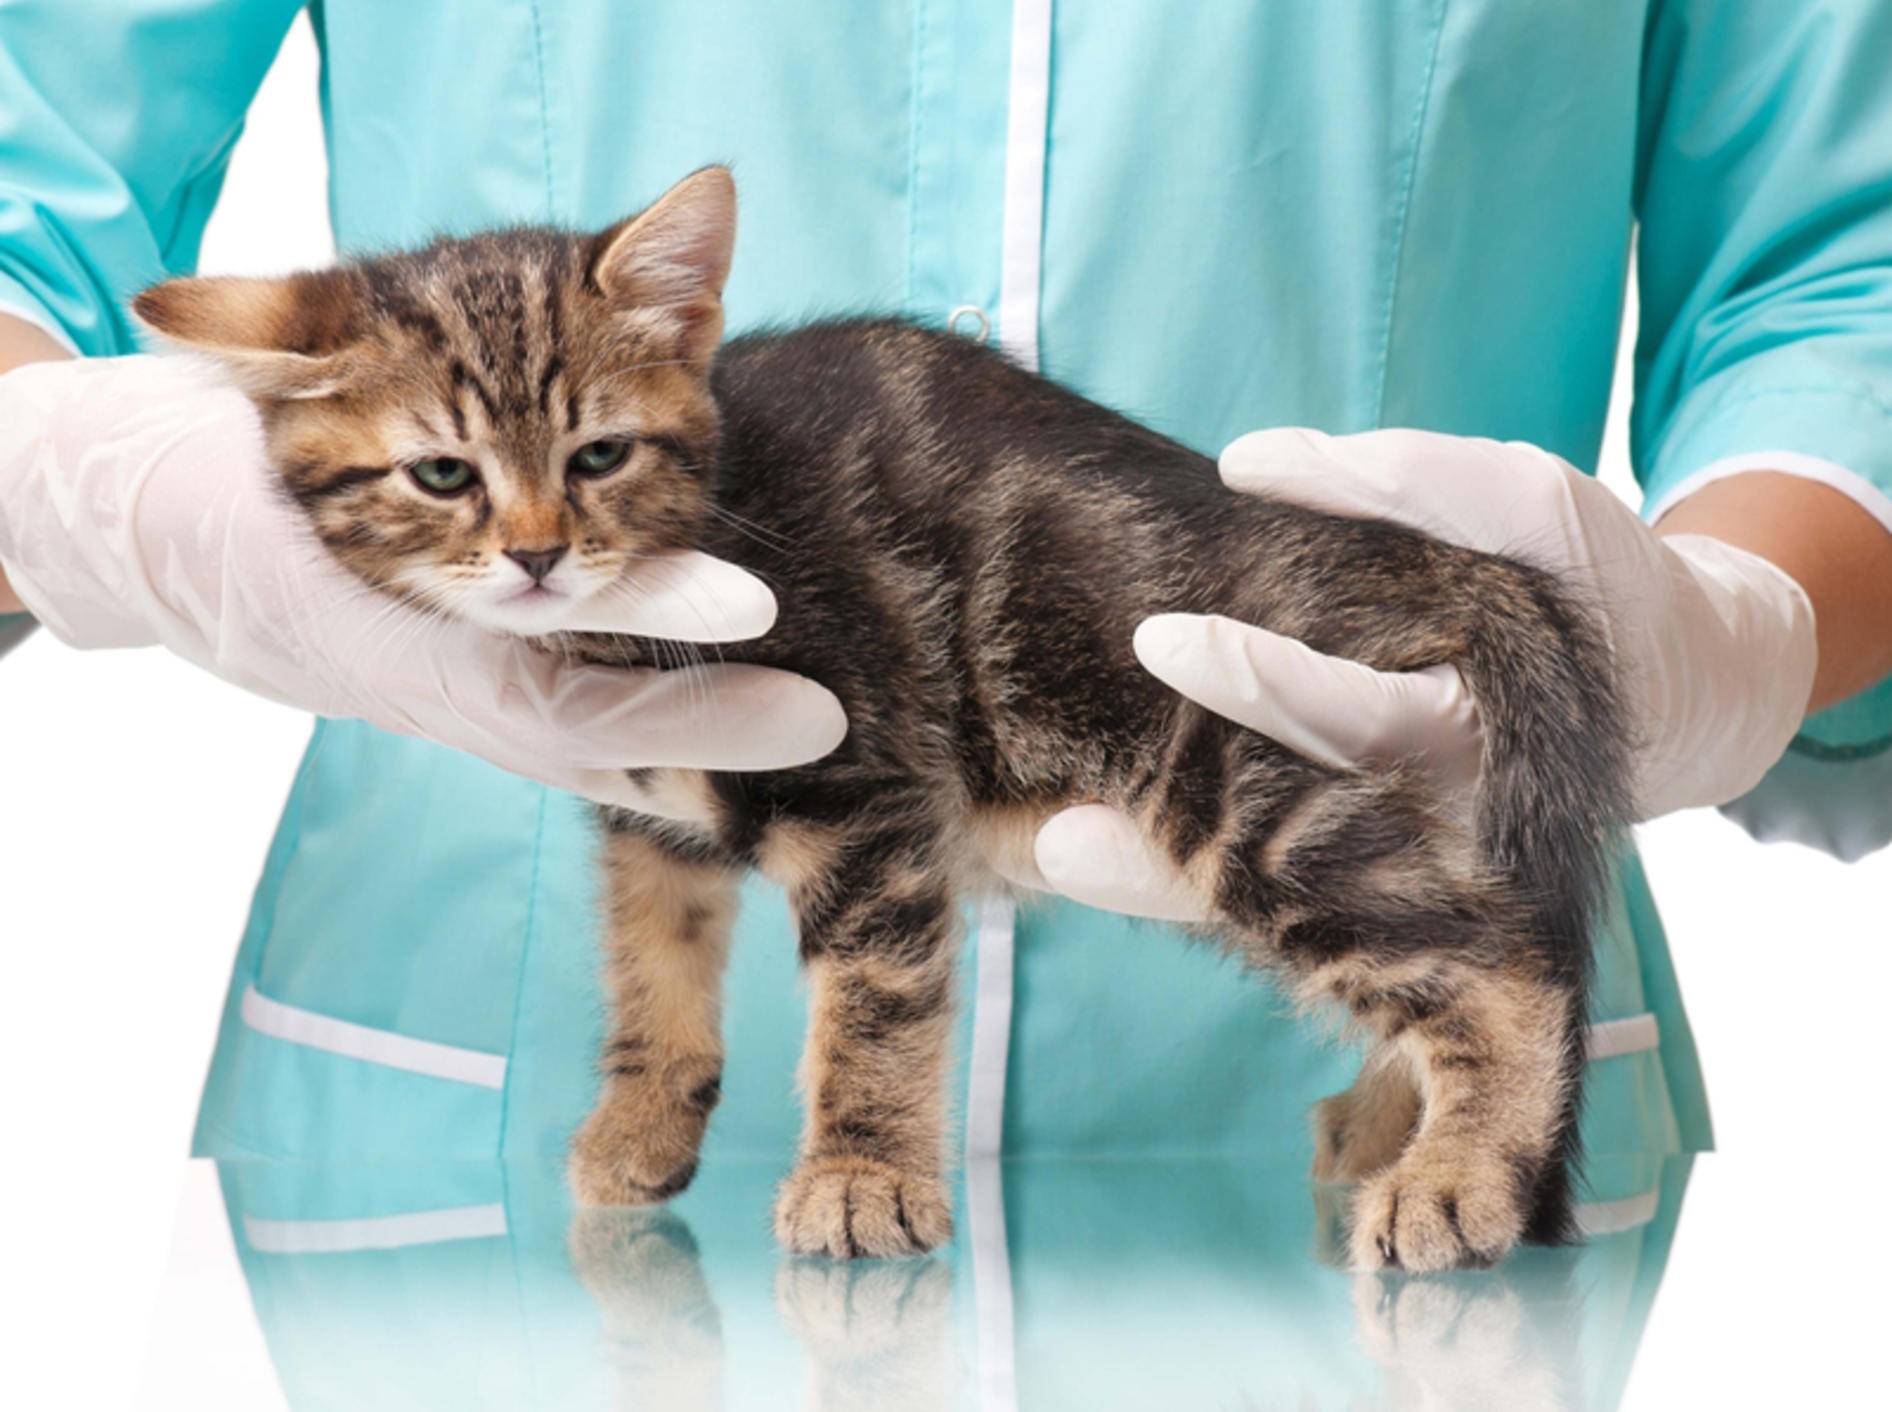 Knochenbrüche behandeln: Gliedmaßen entlasten und schnell zum Tierarzt – Bild: Shutterstock / Lubava